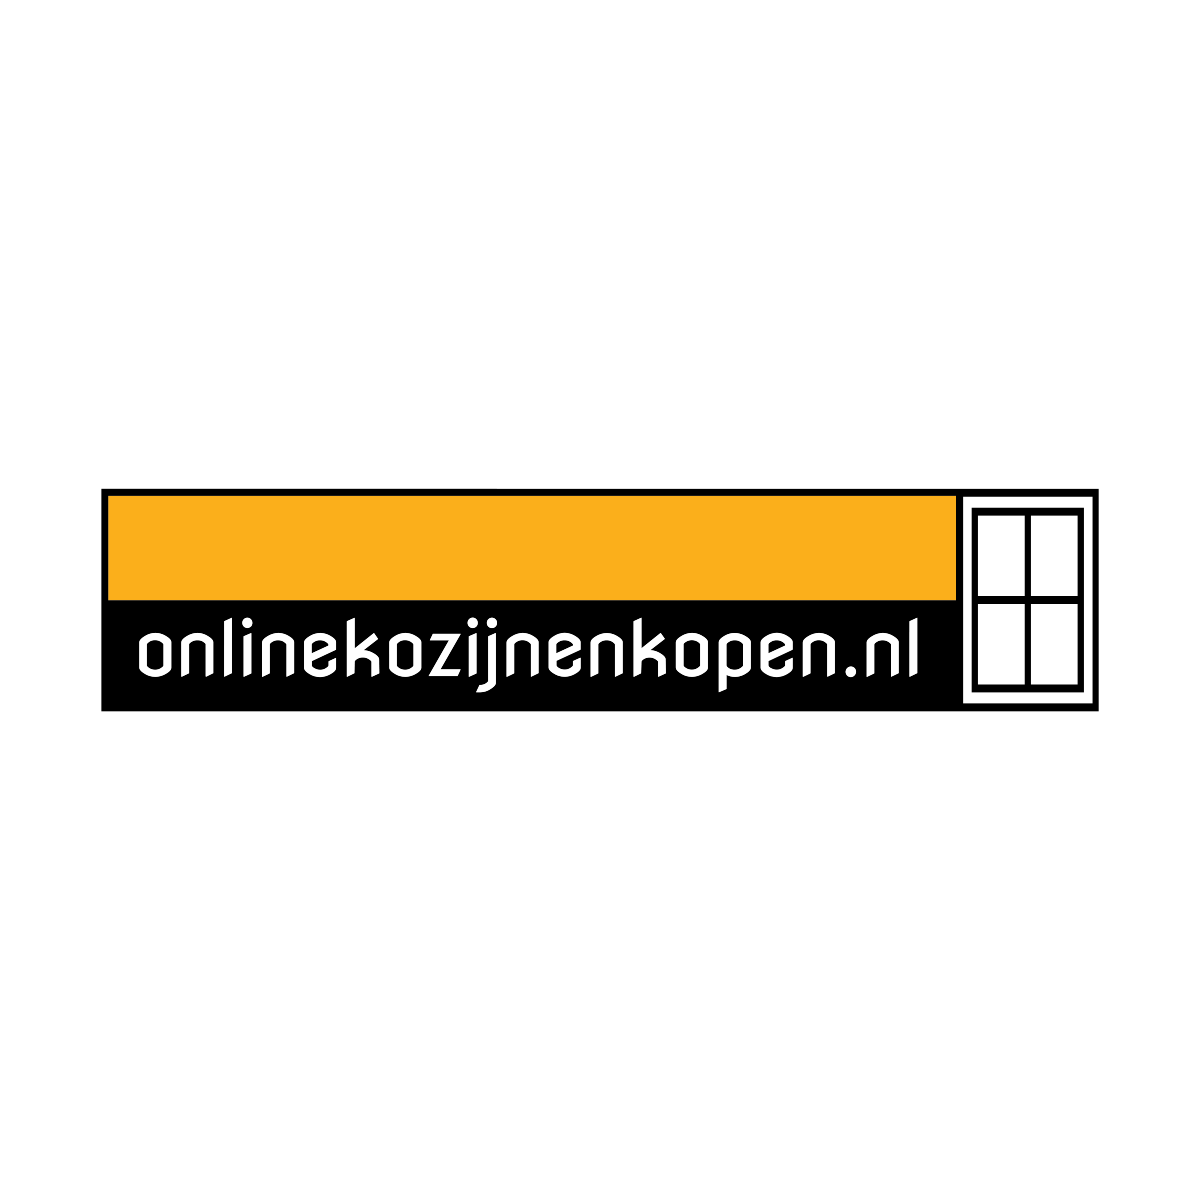 (c) Onlinekozijnenkopen.nl